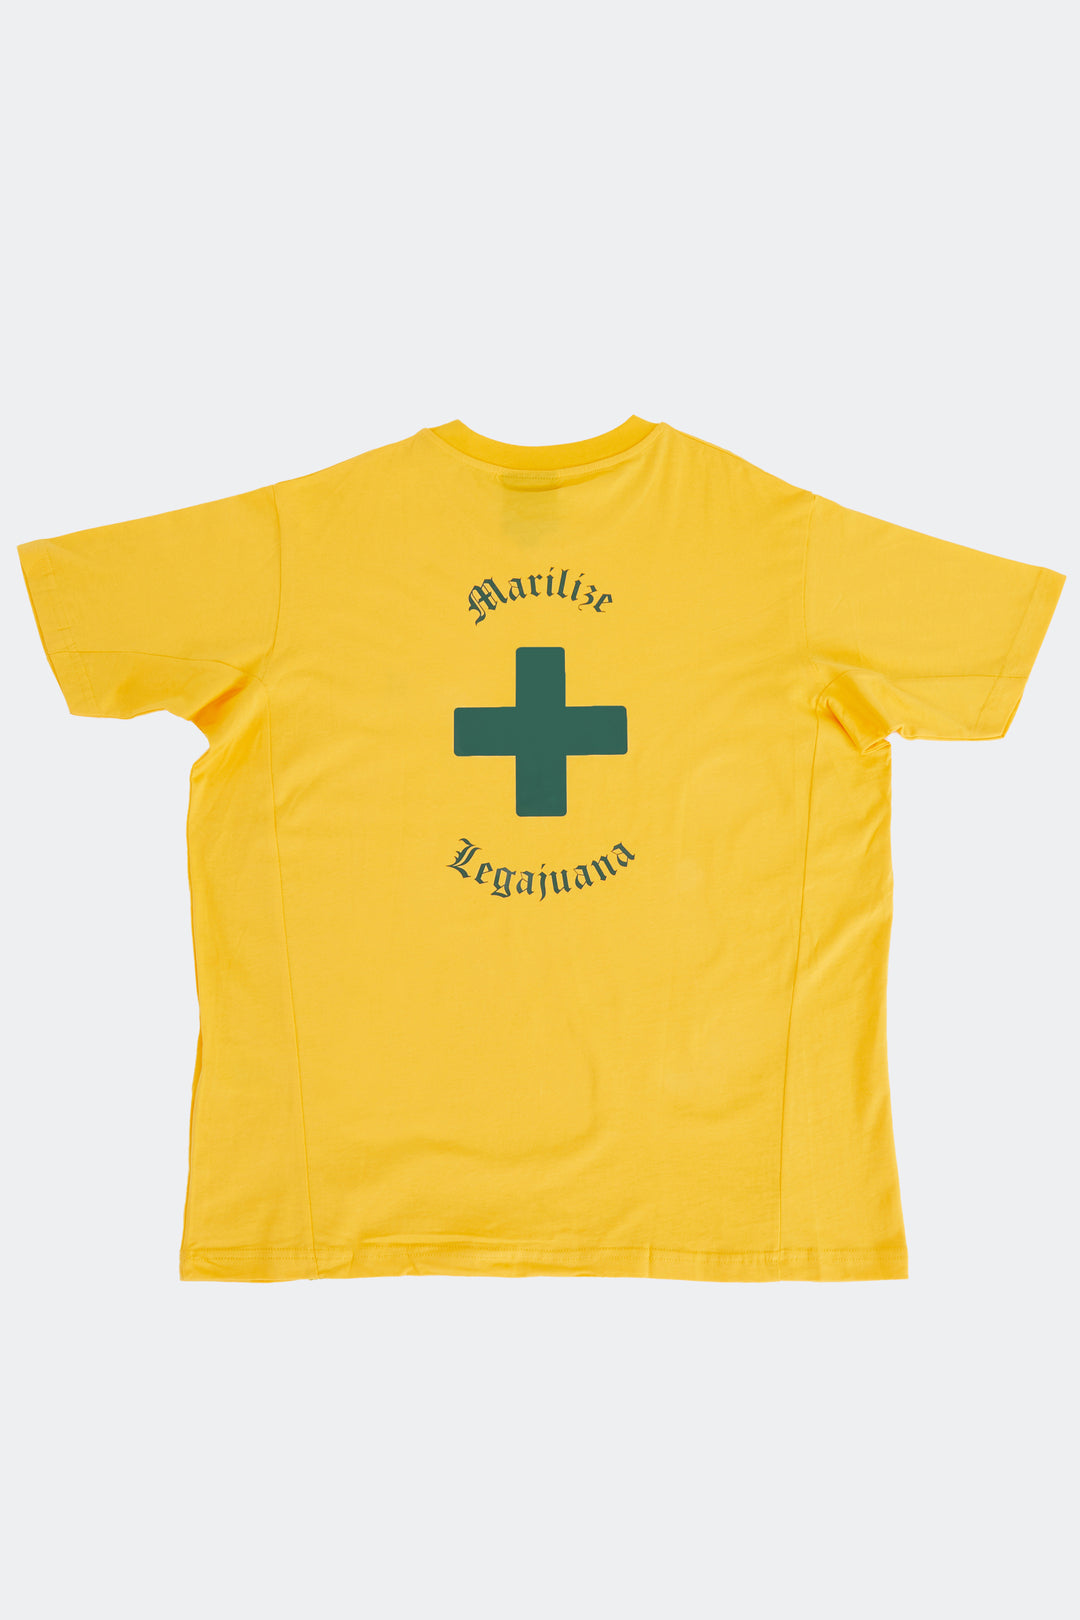 Mariilize Legajuana / Oversized T-shirt